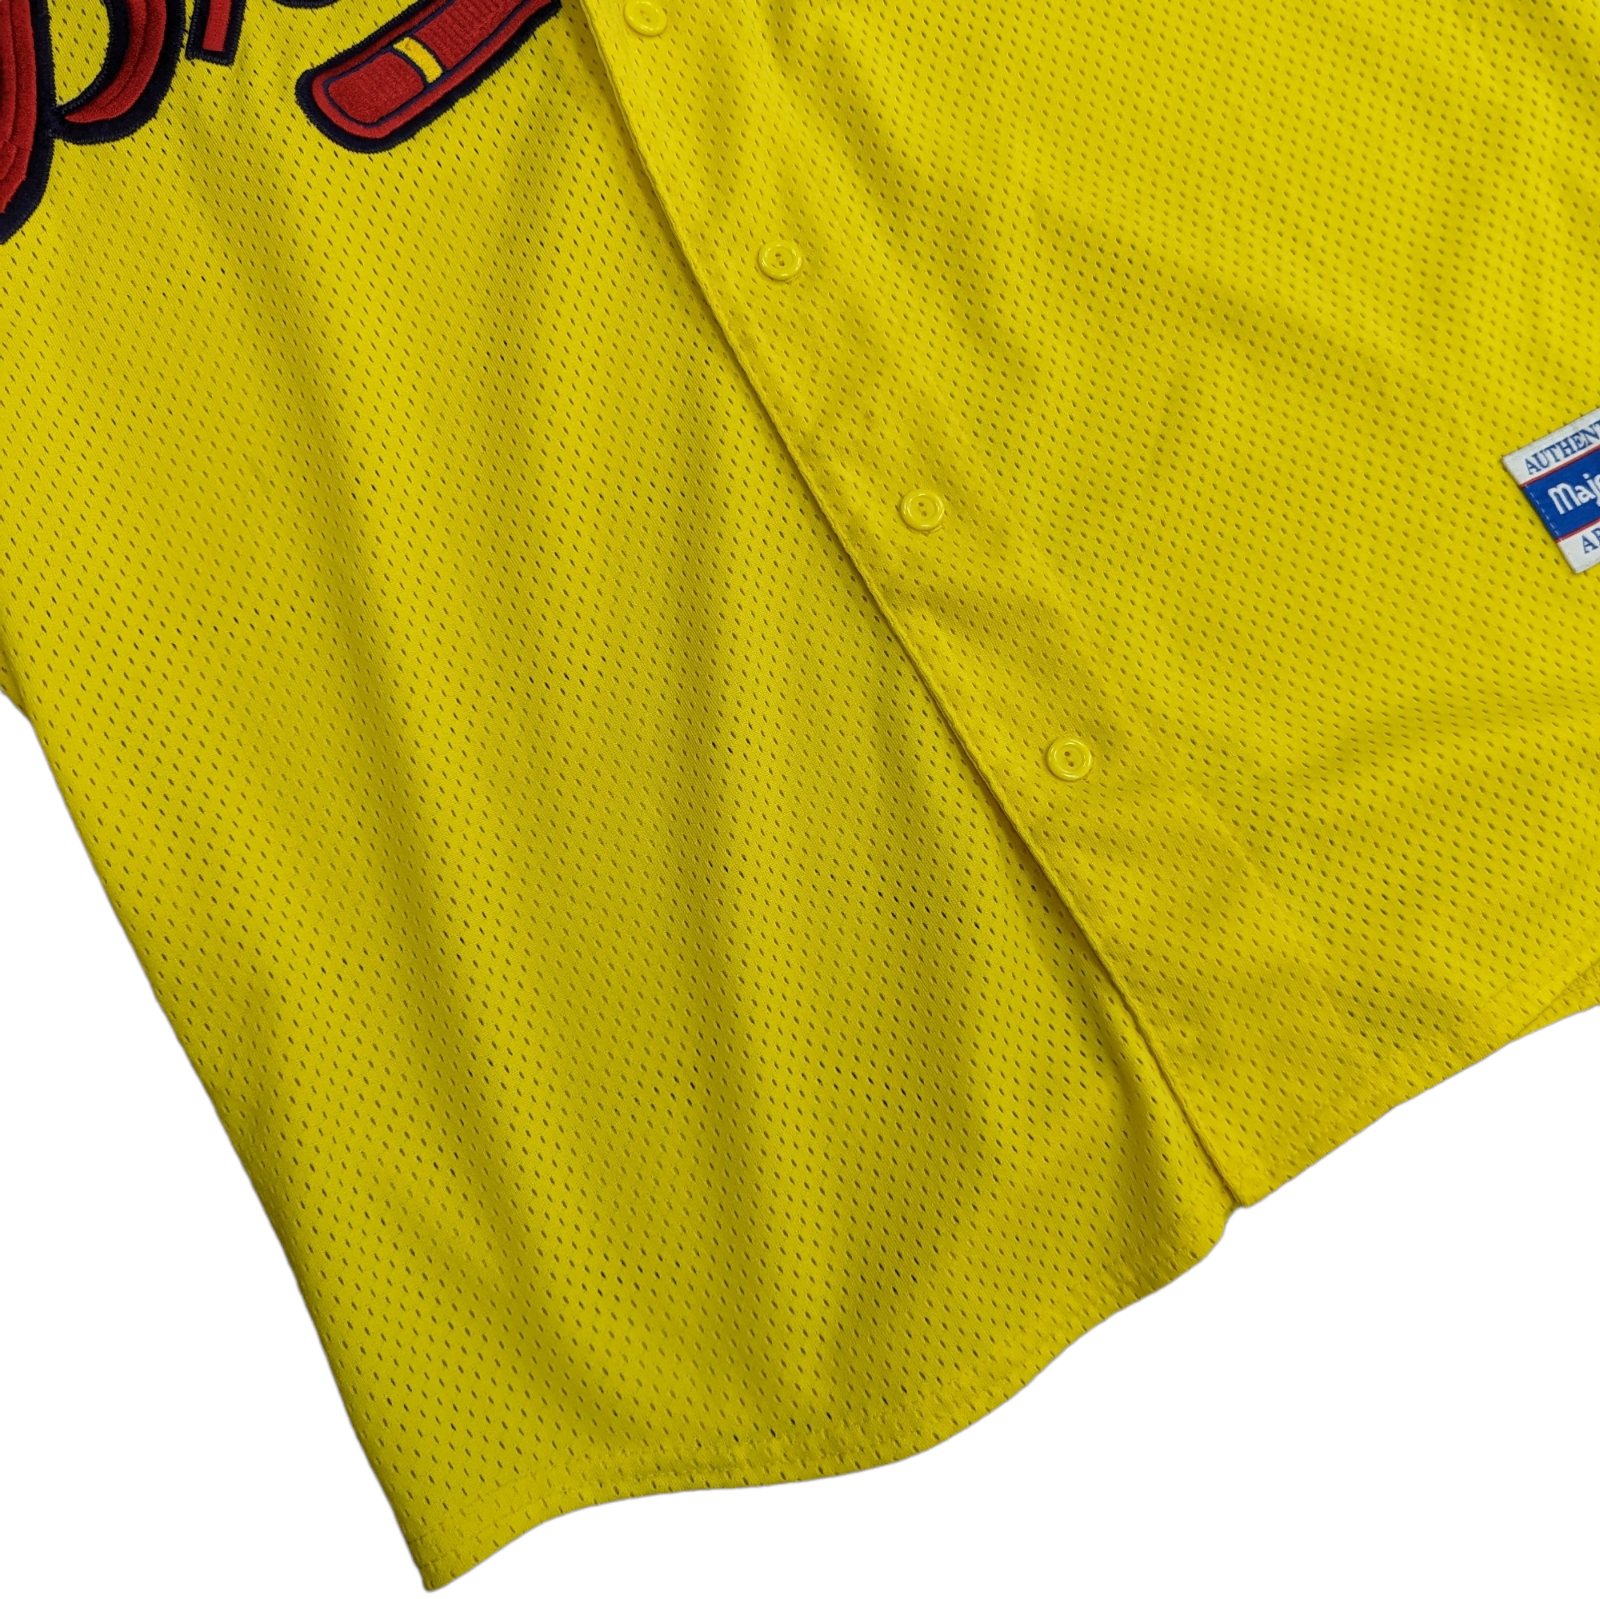 Majestic ATLANTA BRAVES Button-Down Baseball Jersey - A6400 Scarlet - Size  XL